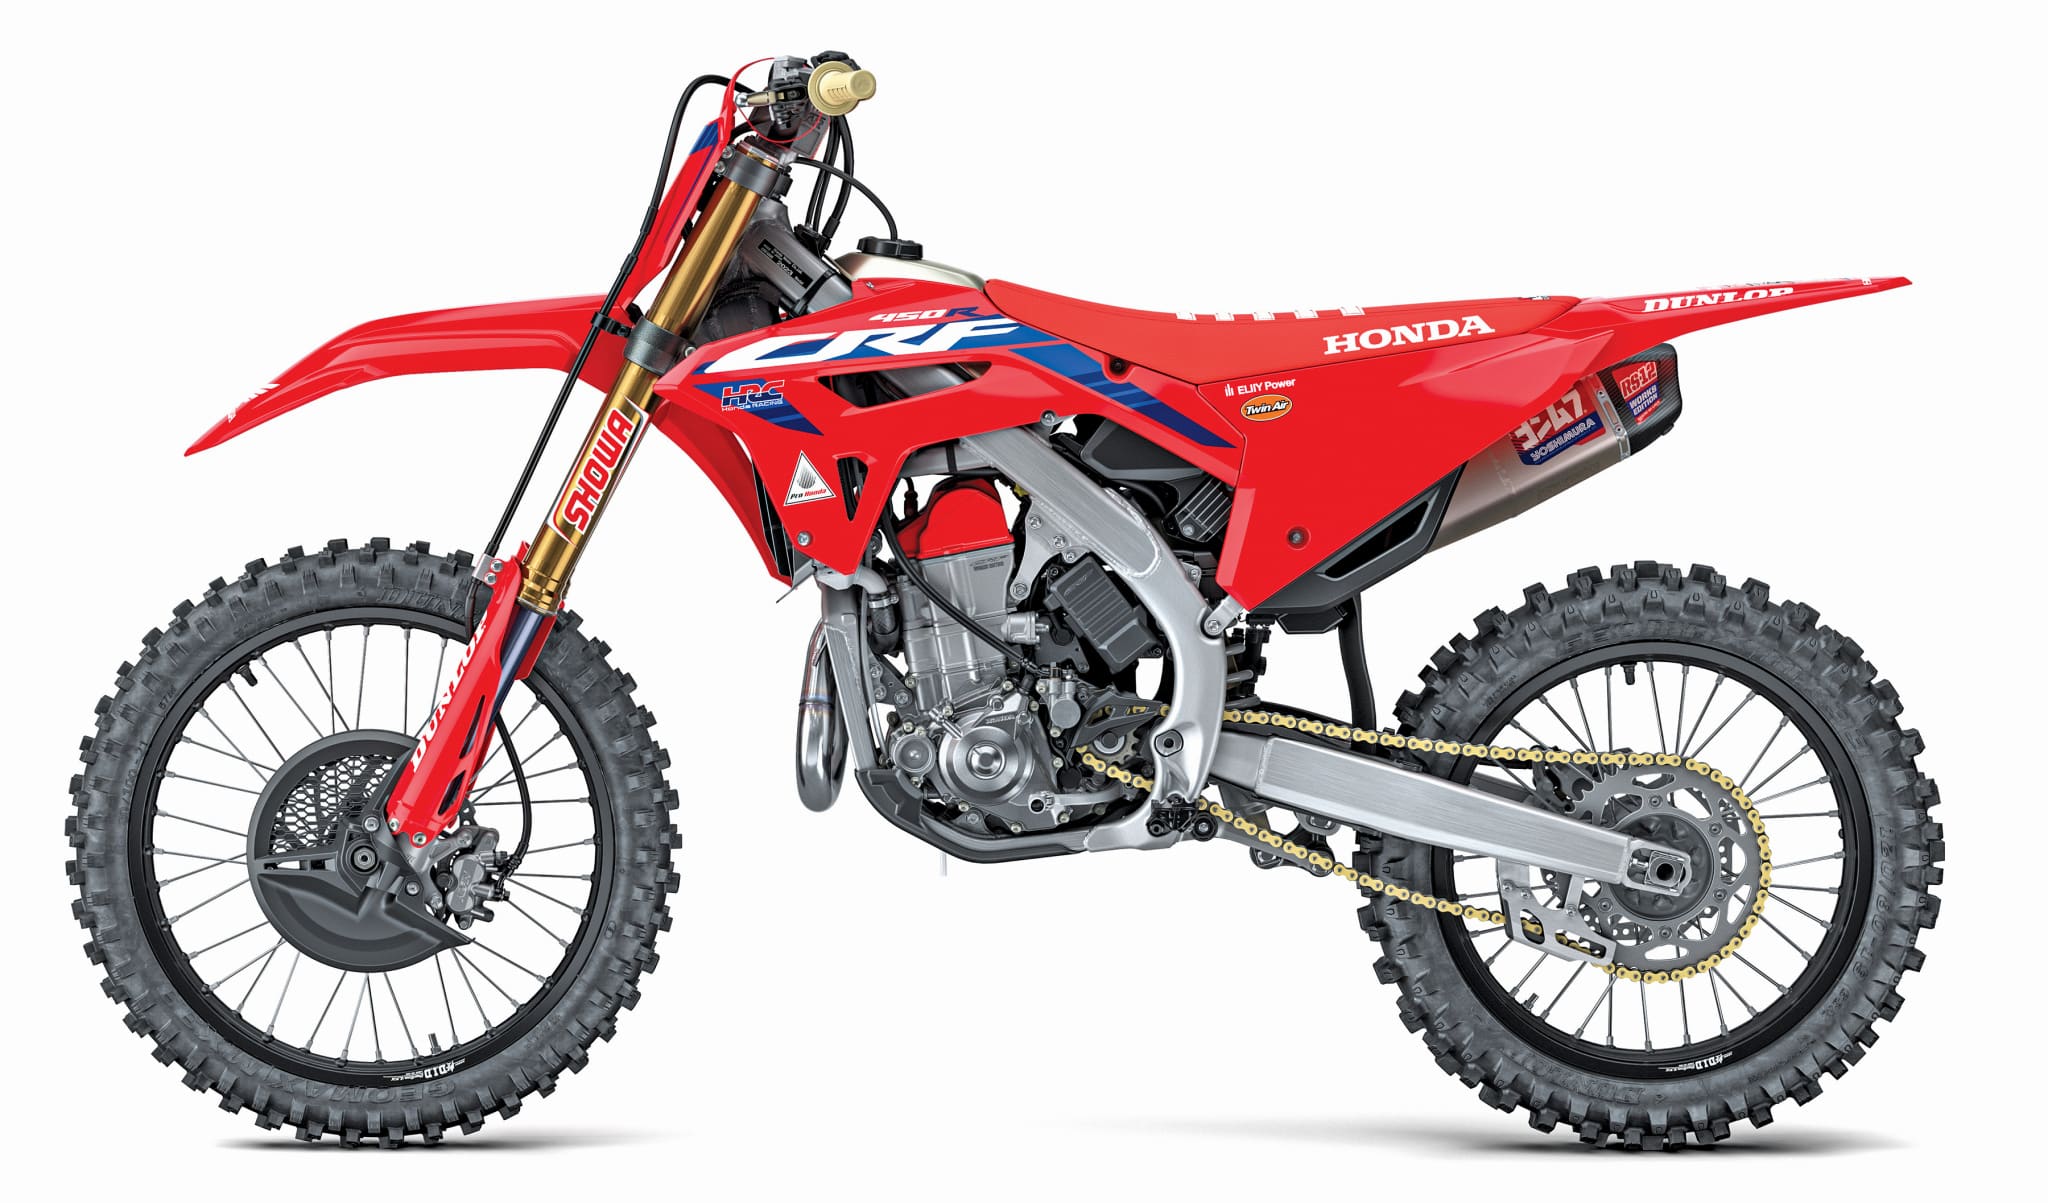 FMF Releases FMF Factory Motocross Bike Toy - Racer X